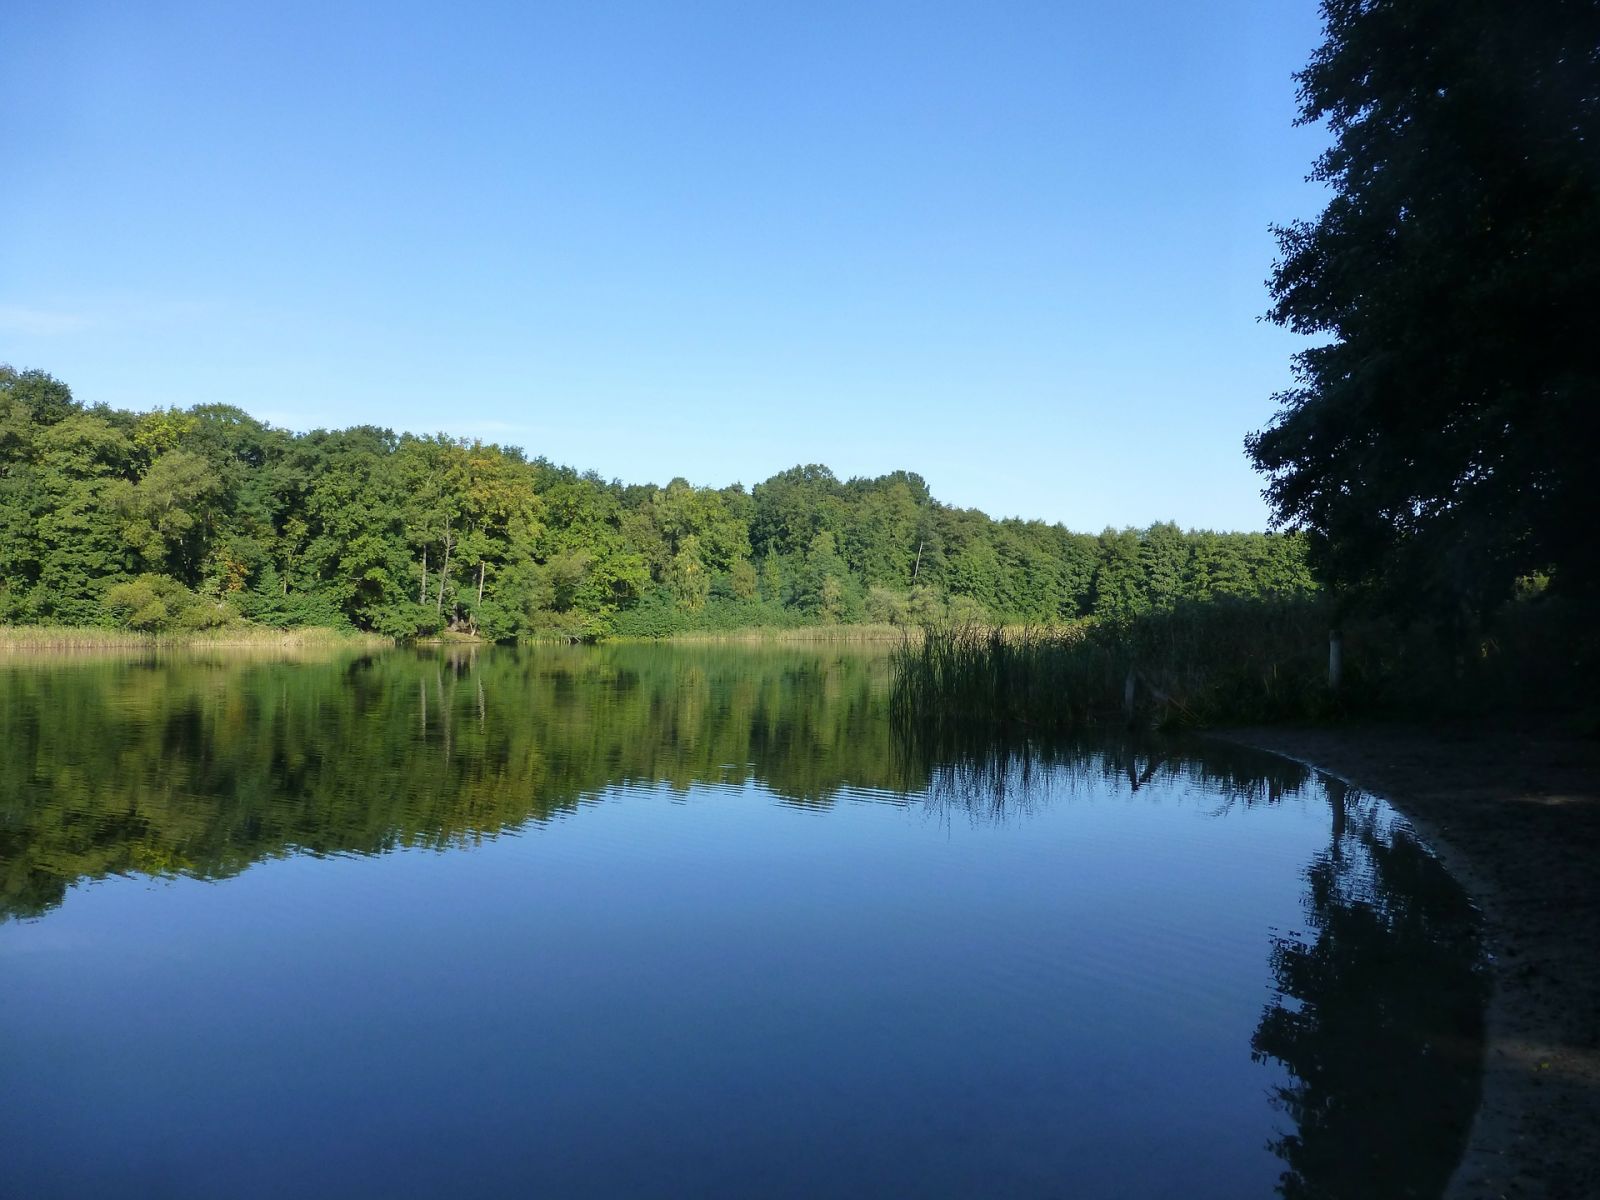 grunewald-lake-nature